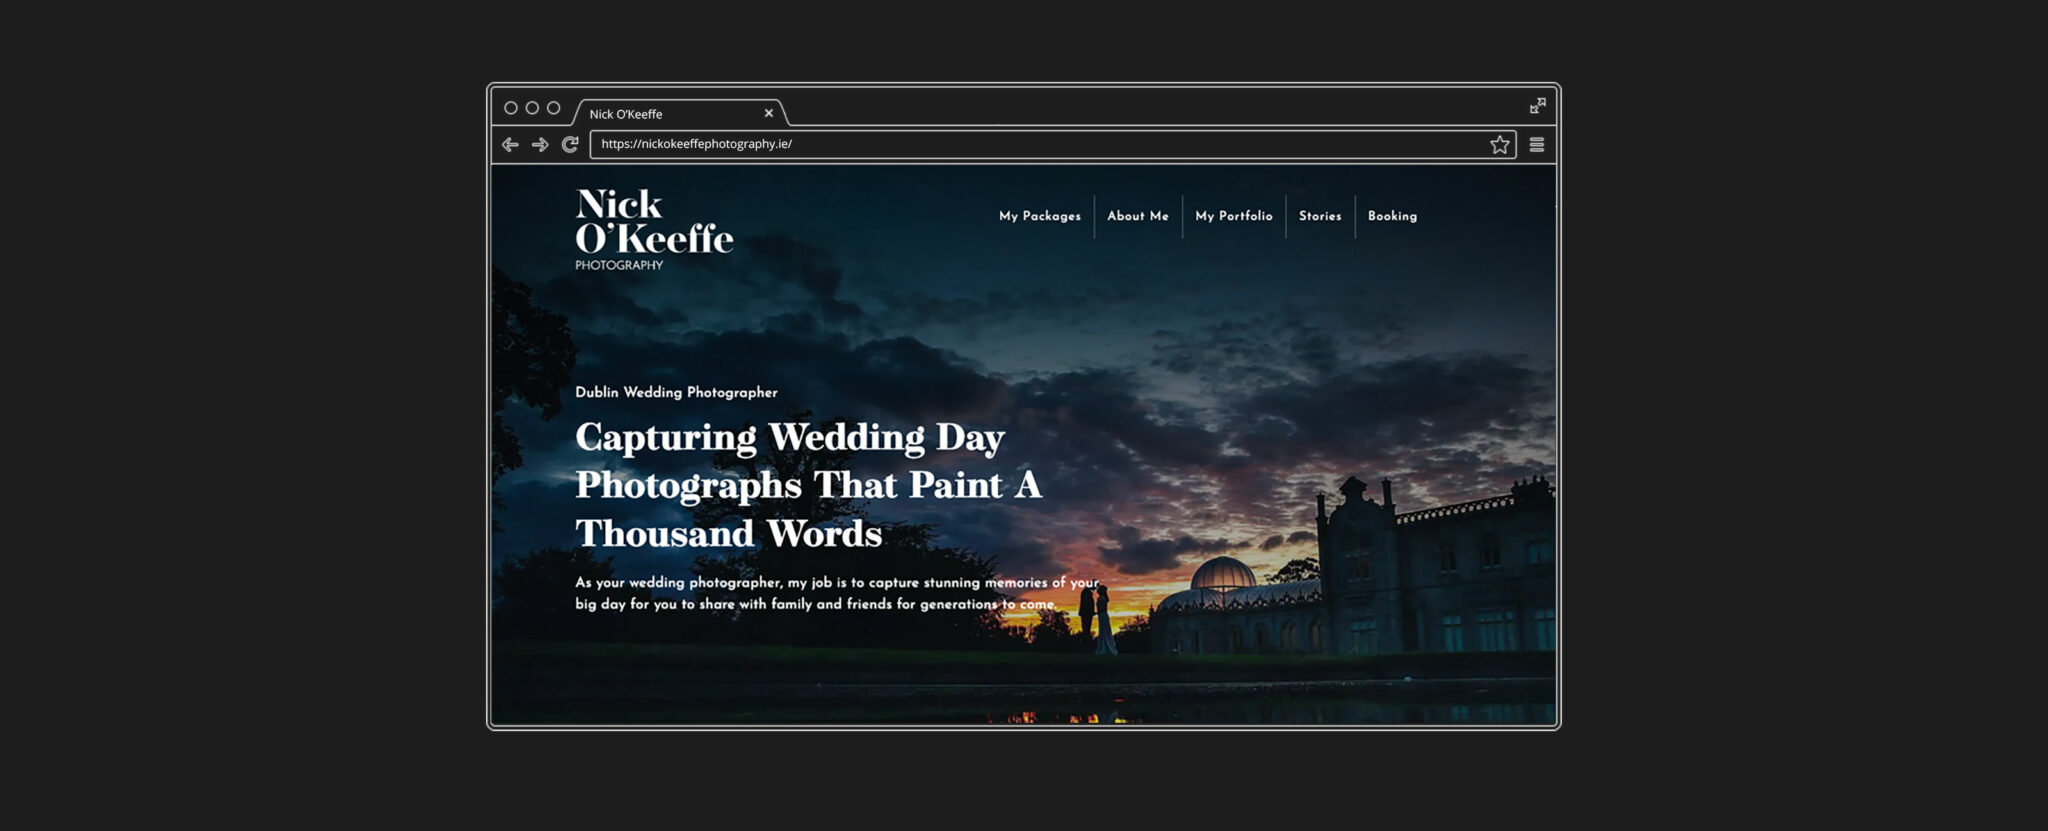 Nick O'Keeffe Desktop Landing Page